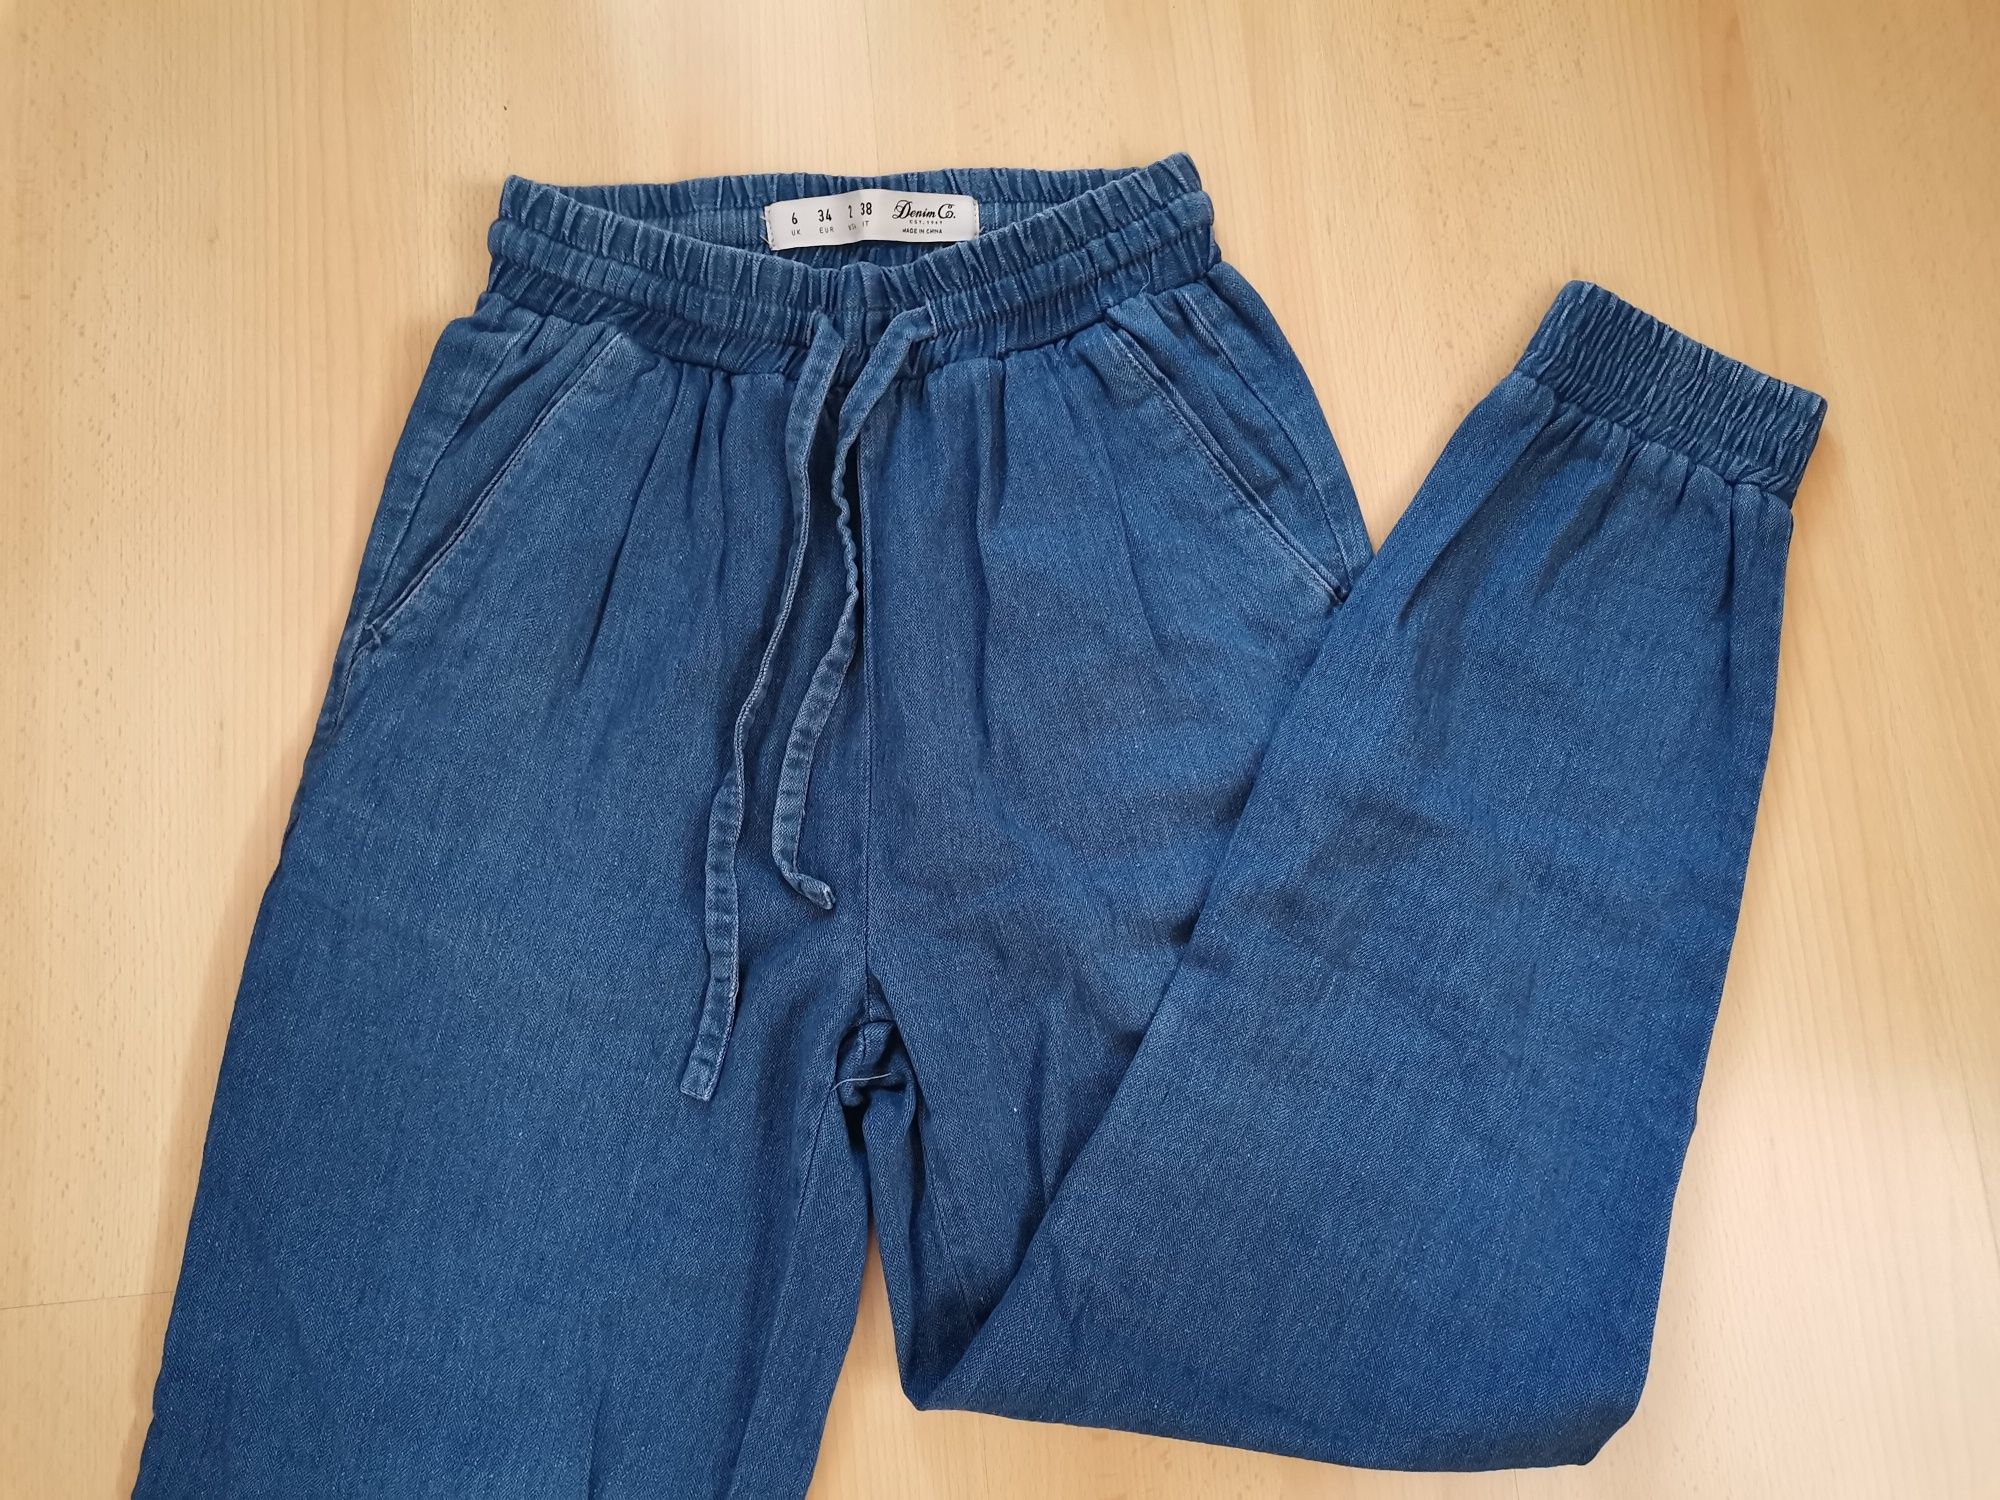 Spodnie joggery 34 XS niebieskie Denim Co jeansowe długie bawełna len